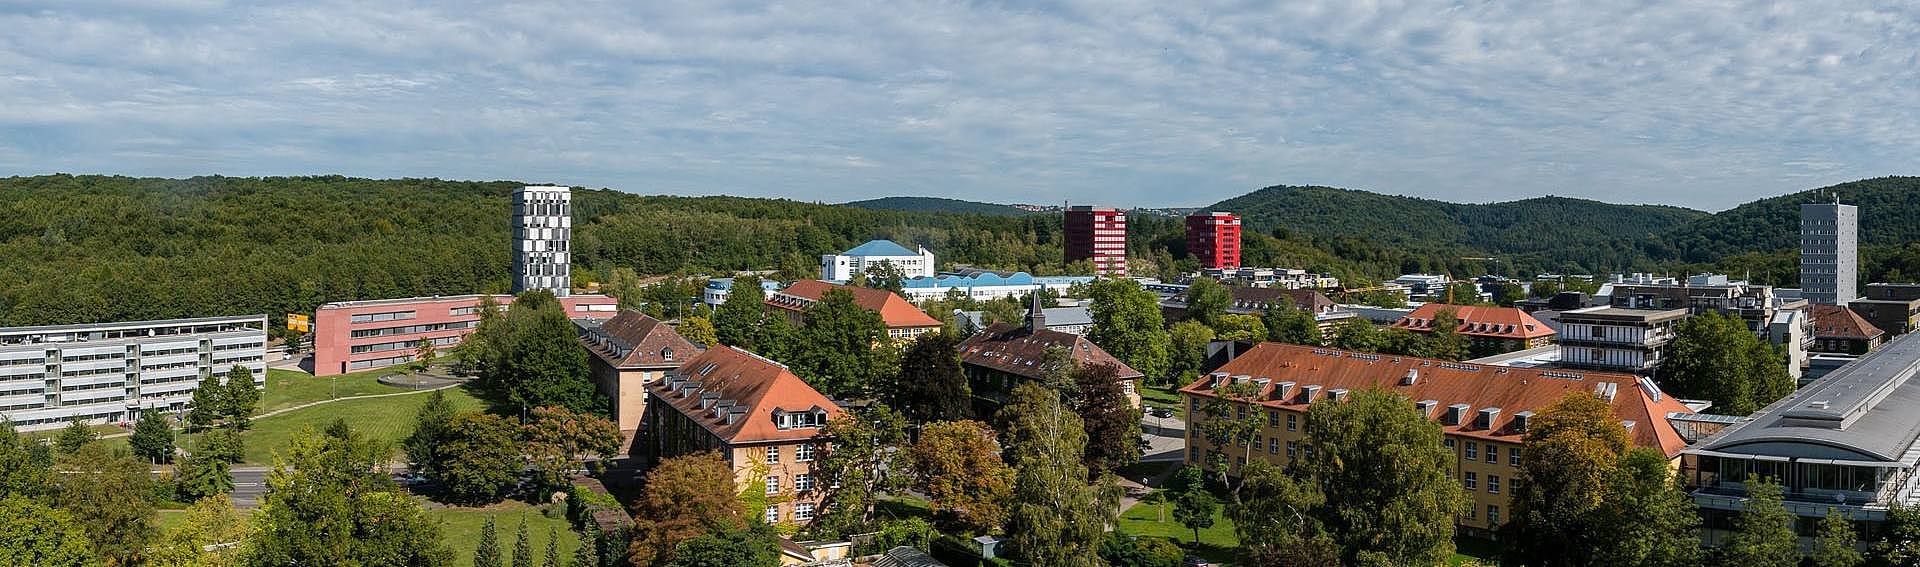 Panoramaaufnahme des Campus Saarbrücken